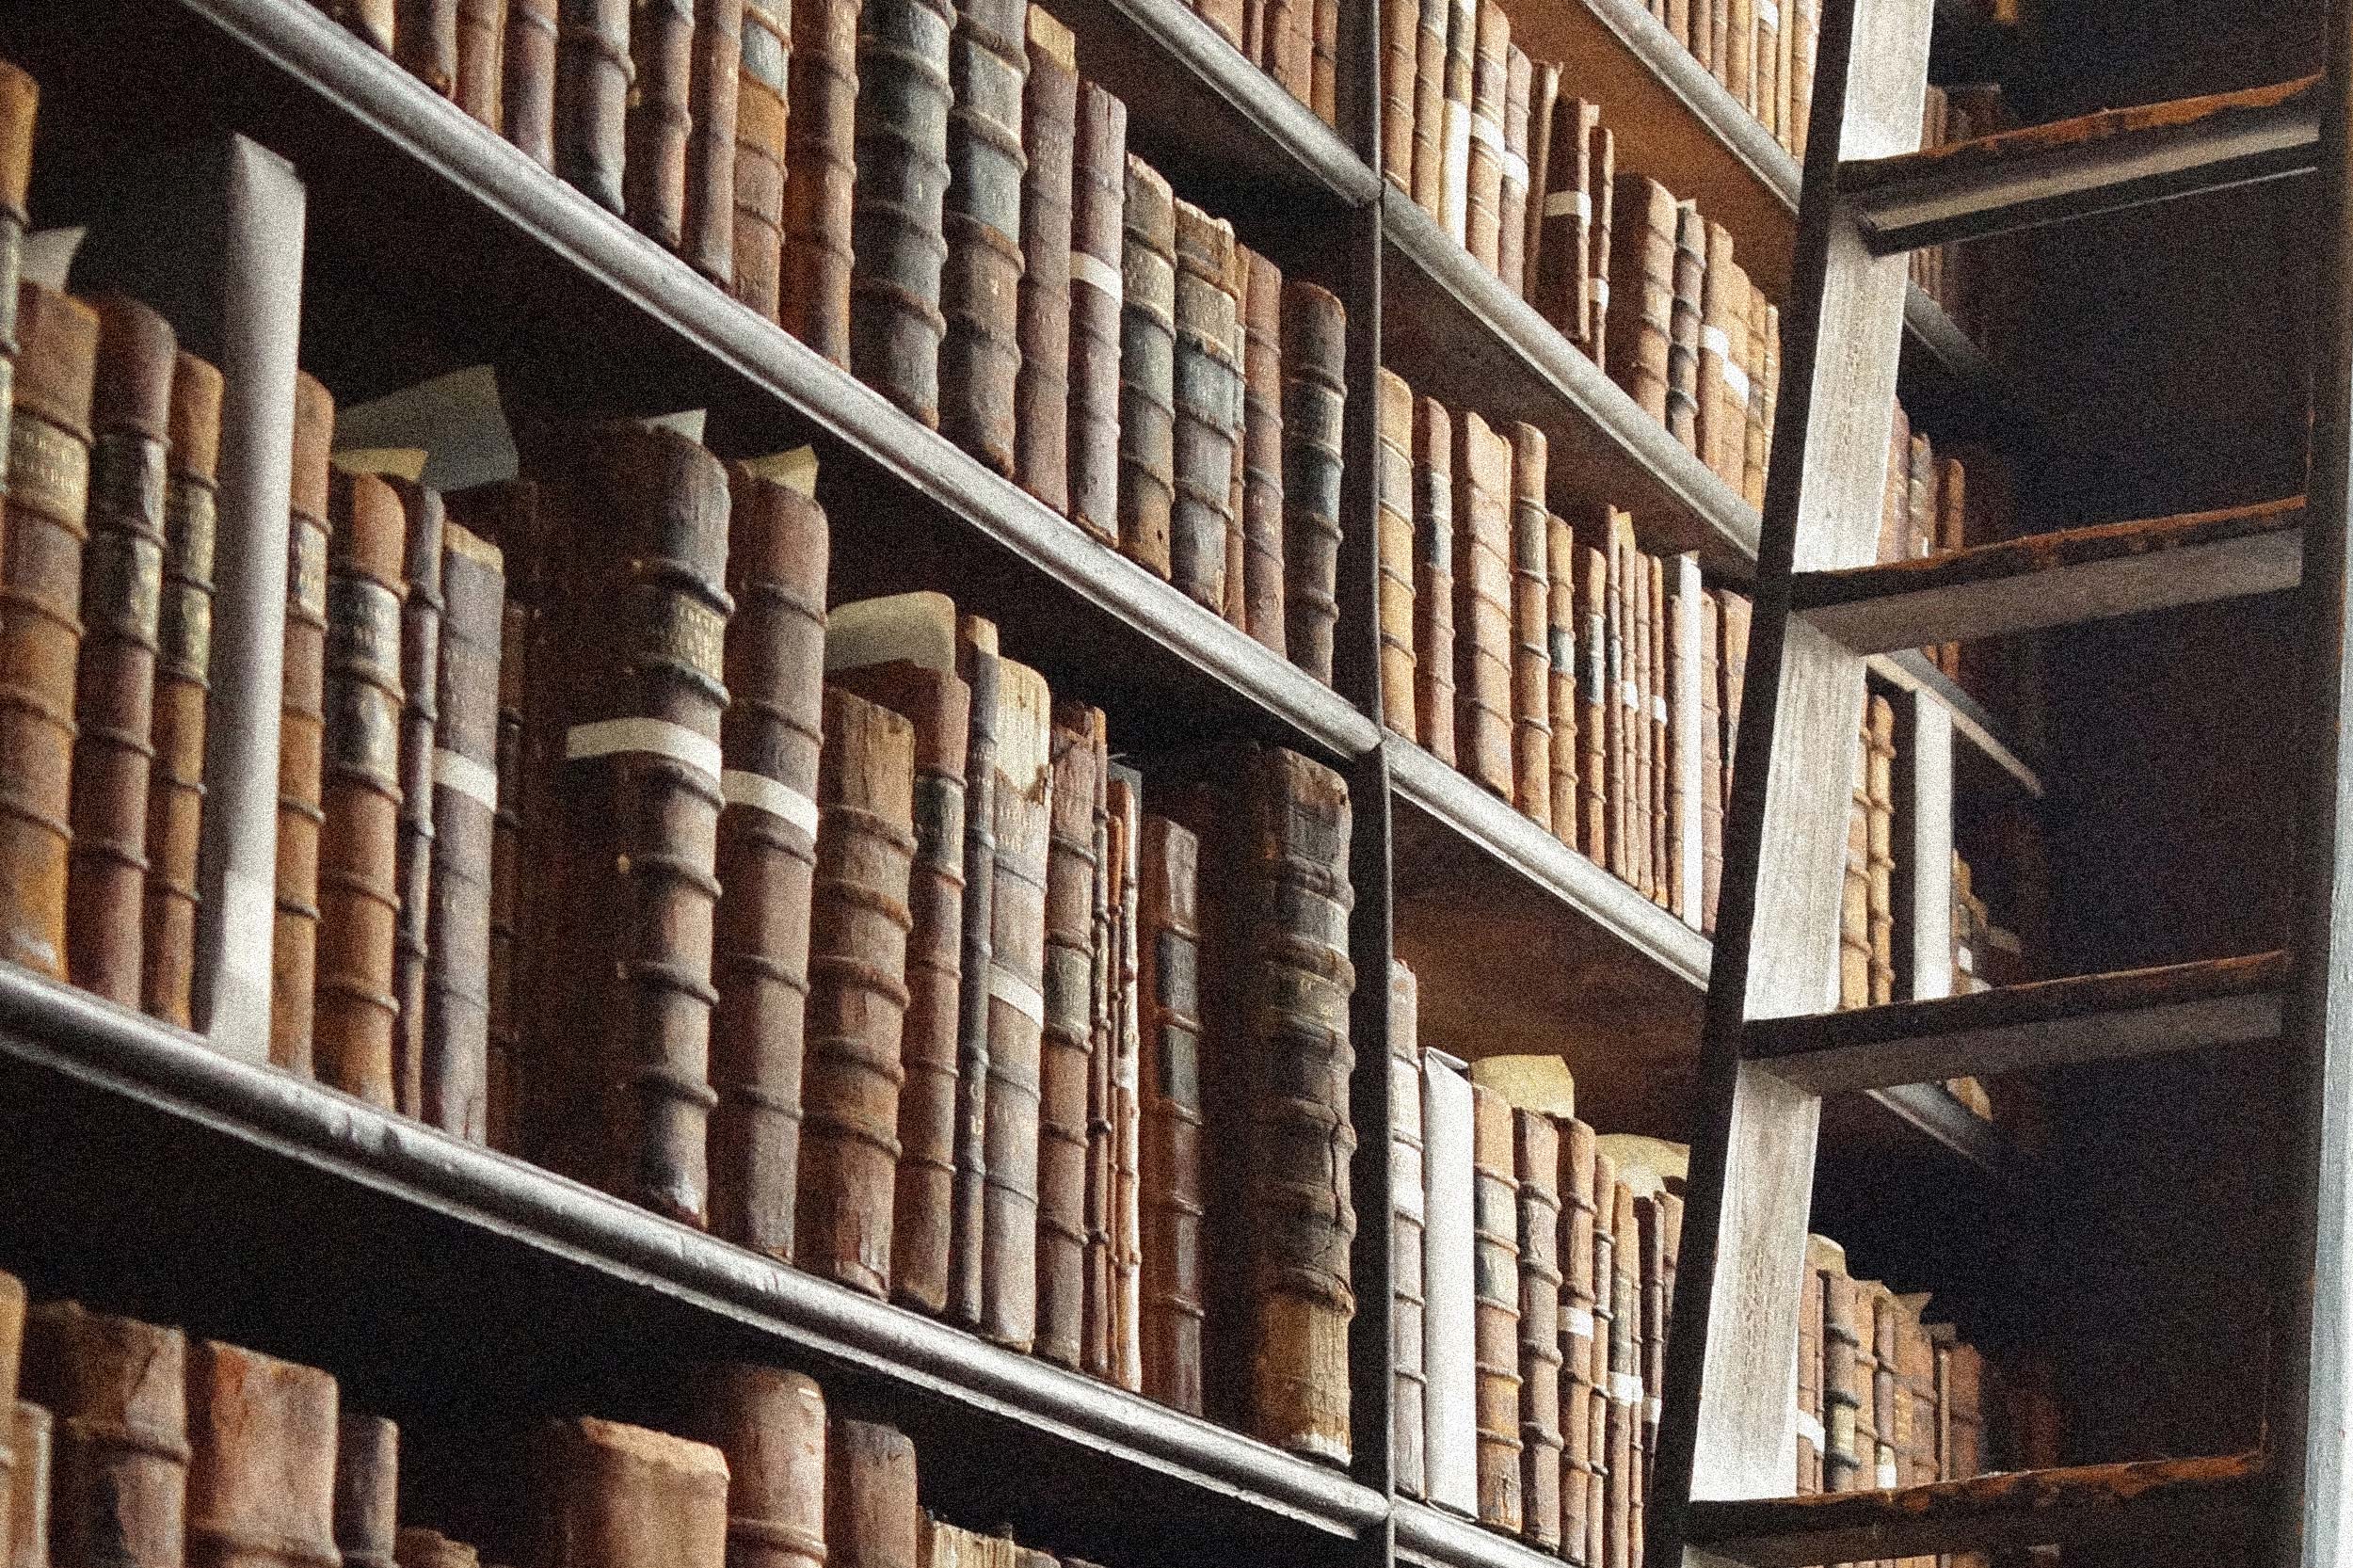 Großes Bücherregal mit vielen alten Büchern und einer Leiter rechts im Bild